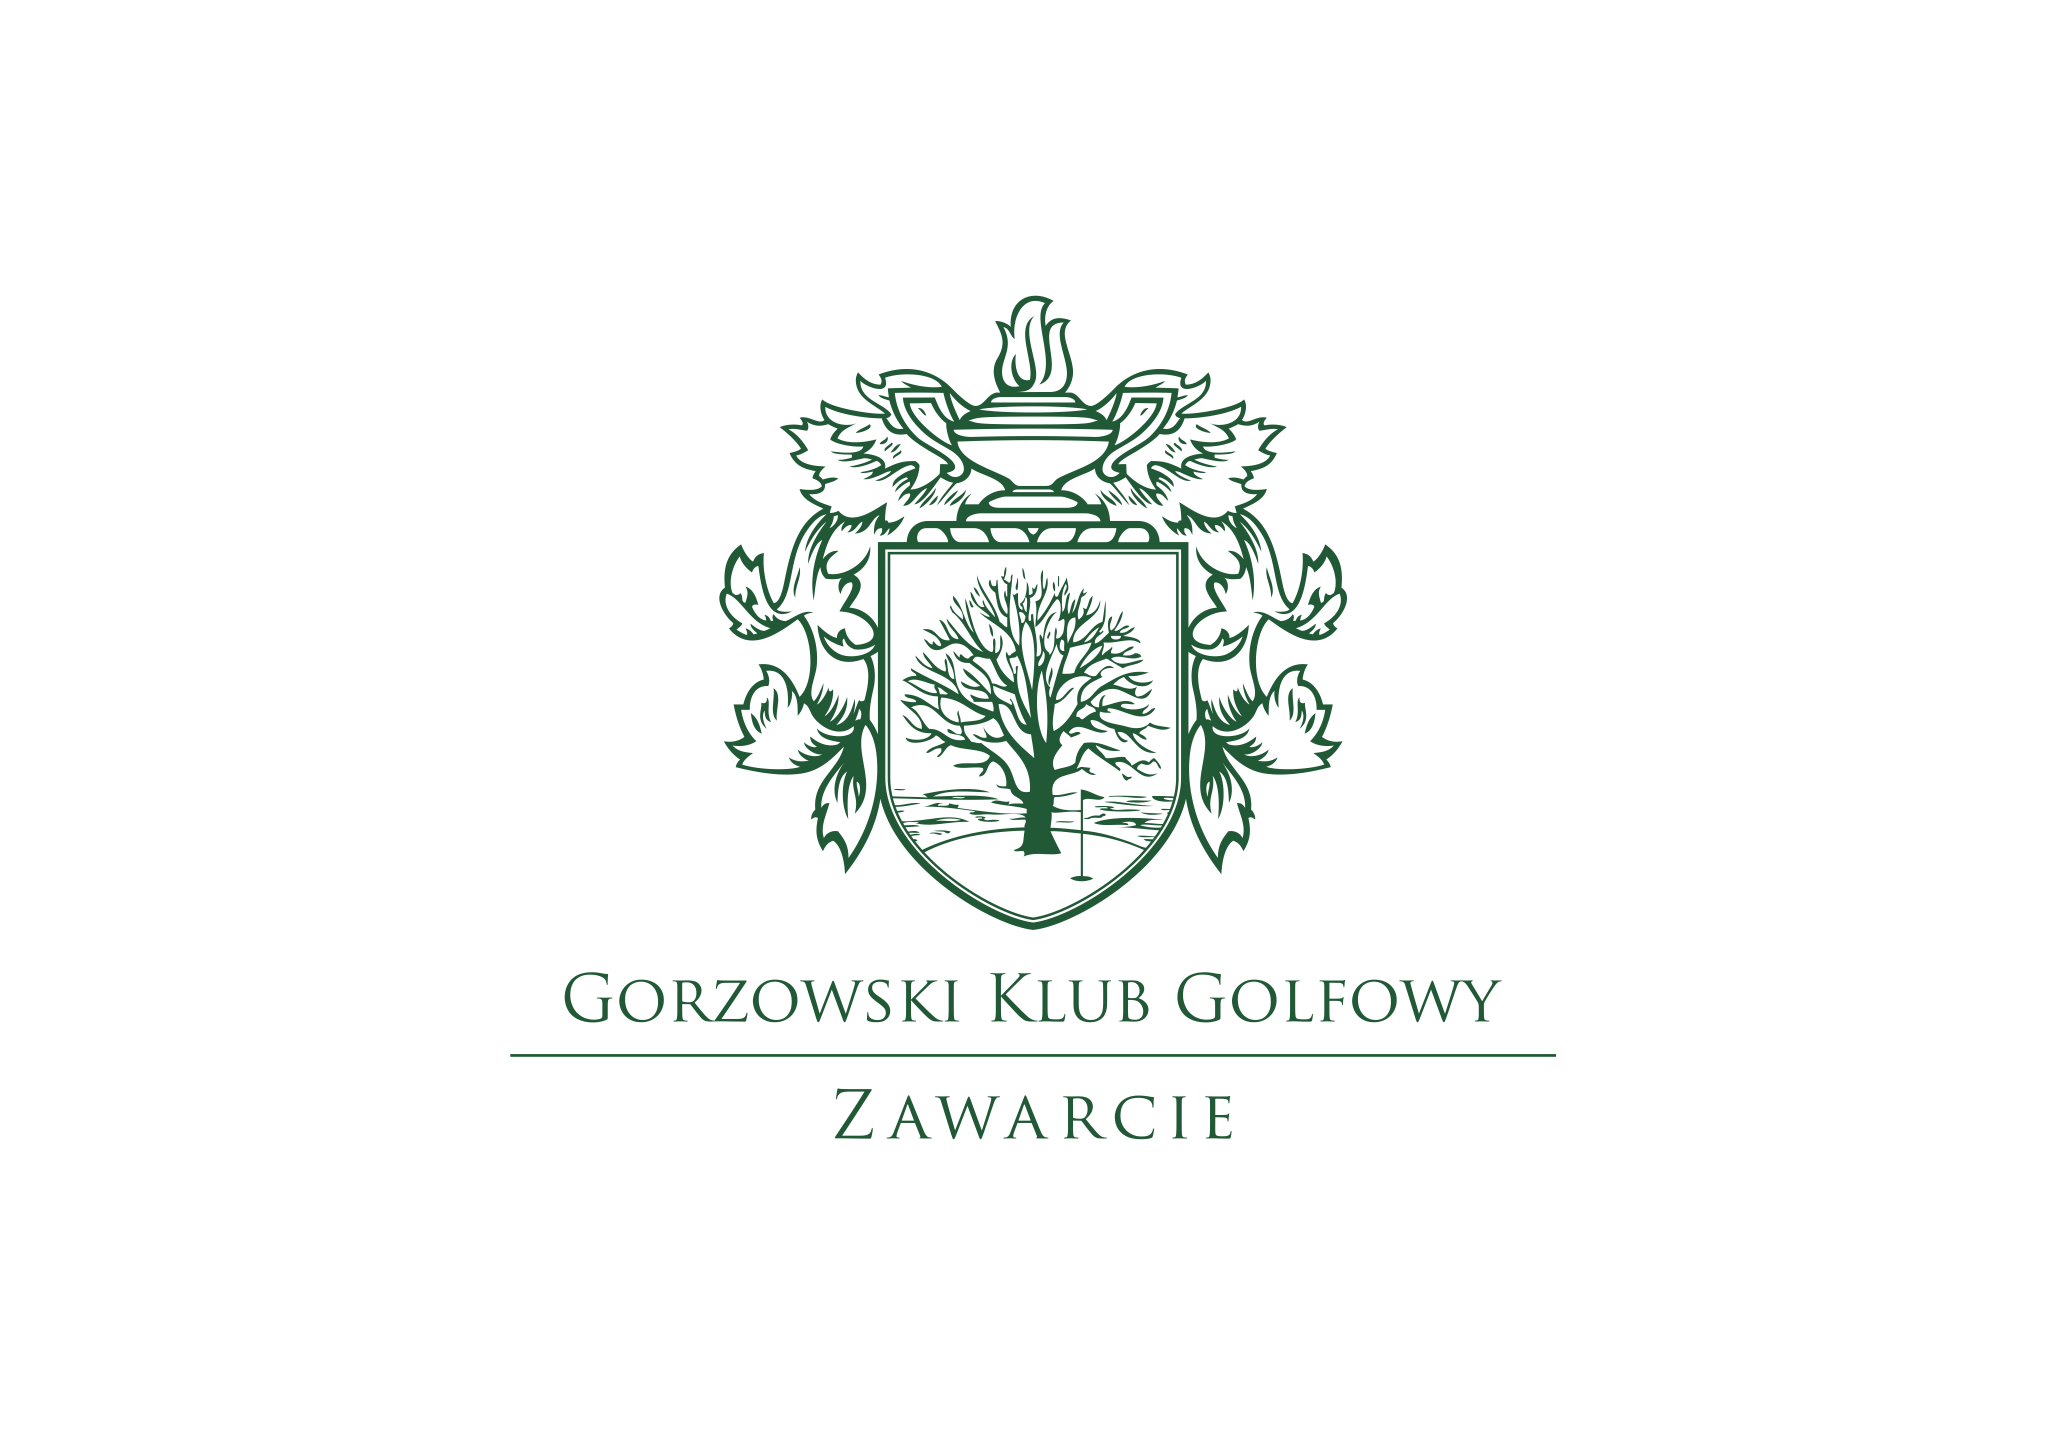 Gorzowski Klub Golfowy Zawarcie